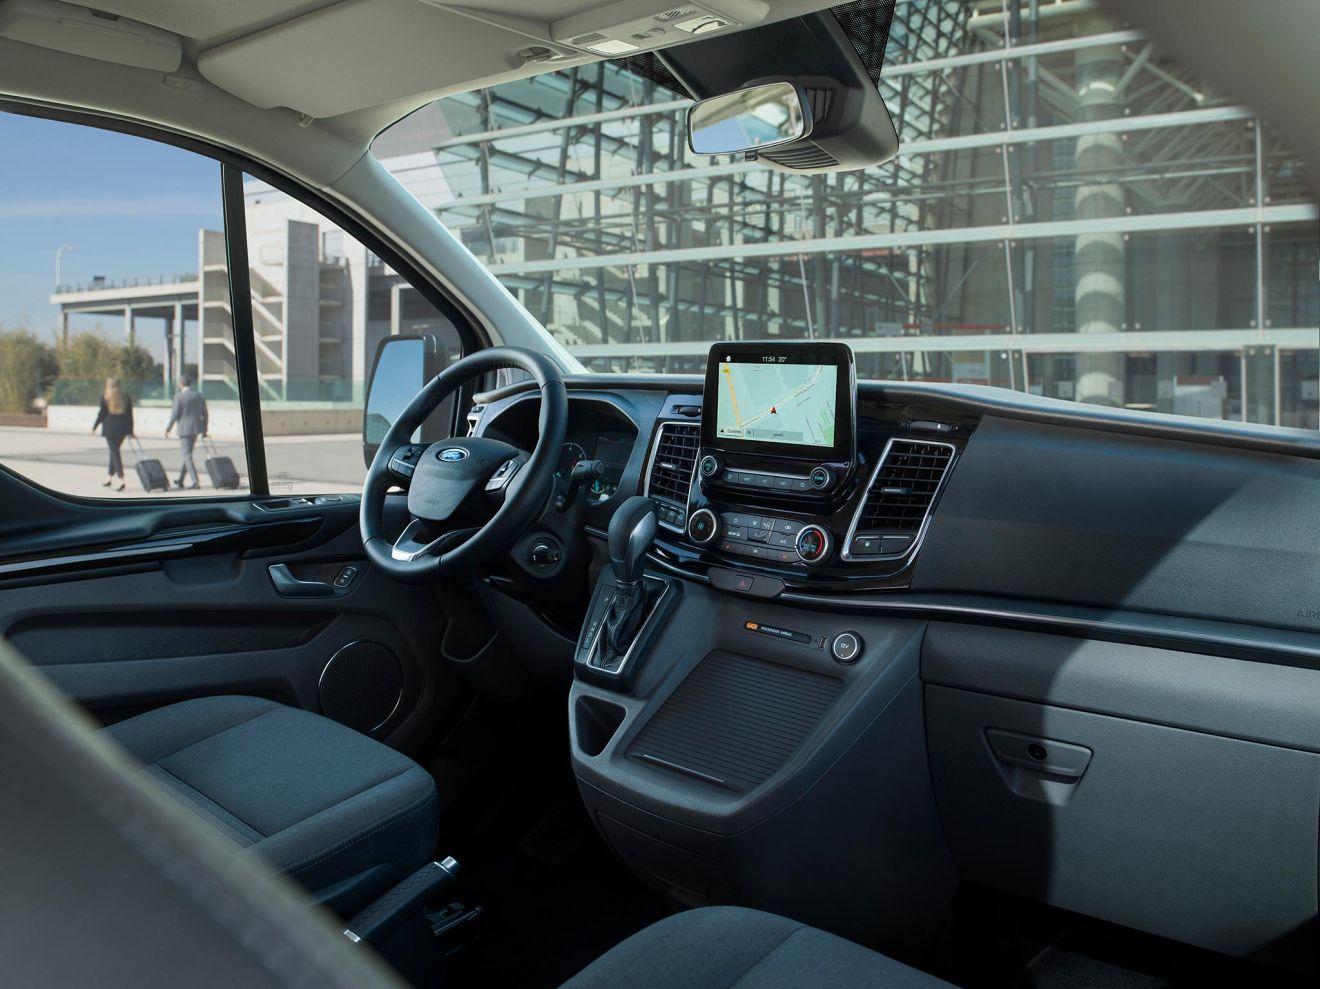 Το στάνταρ ενσωματωμένο μόντεμ FordPass Connect παρέχει συνδεσιμότητα Wi-Fi για τους επιβάτες υποστηρίζοντας έως και 10 συσκευές. Η εφαρμογή κινητού FordPass προσφέρει πρόσβαση σε λειτουργίες, όπως Vehicle Status (Κατάσταση Οχήματος), Vehicle Locator (Εντοπιστής Οχήματος) και Remote lock/unlock (Απομακρυσμένο Κλείδωμα/Ξεκλείδωμα).